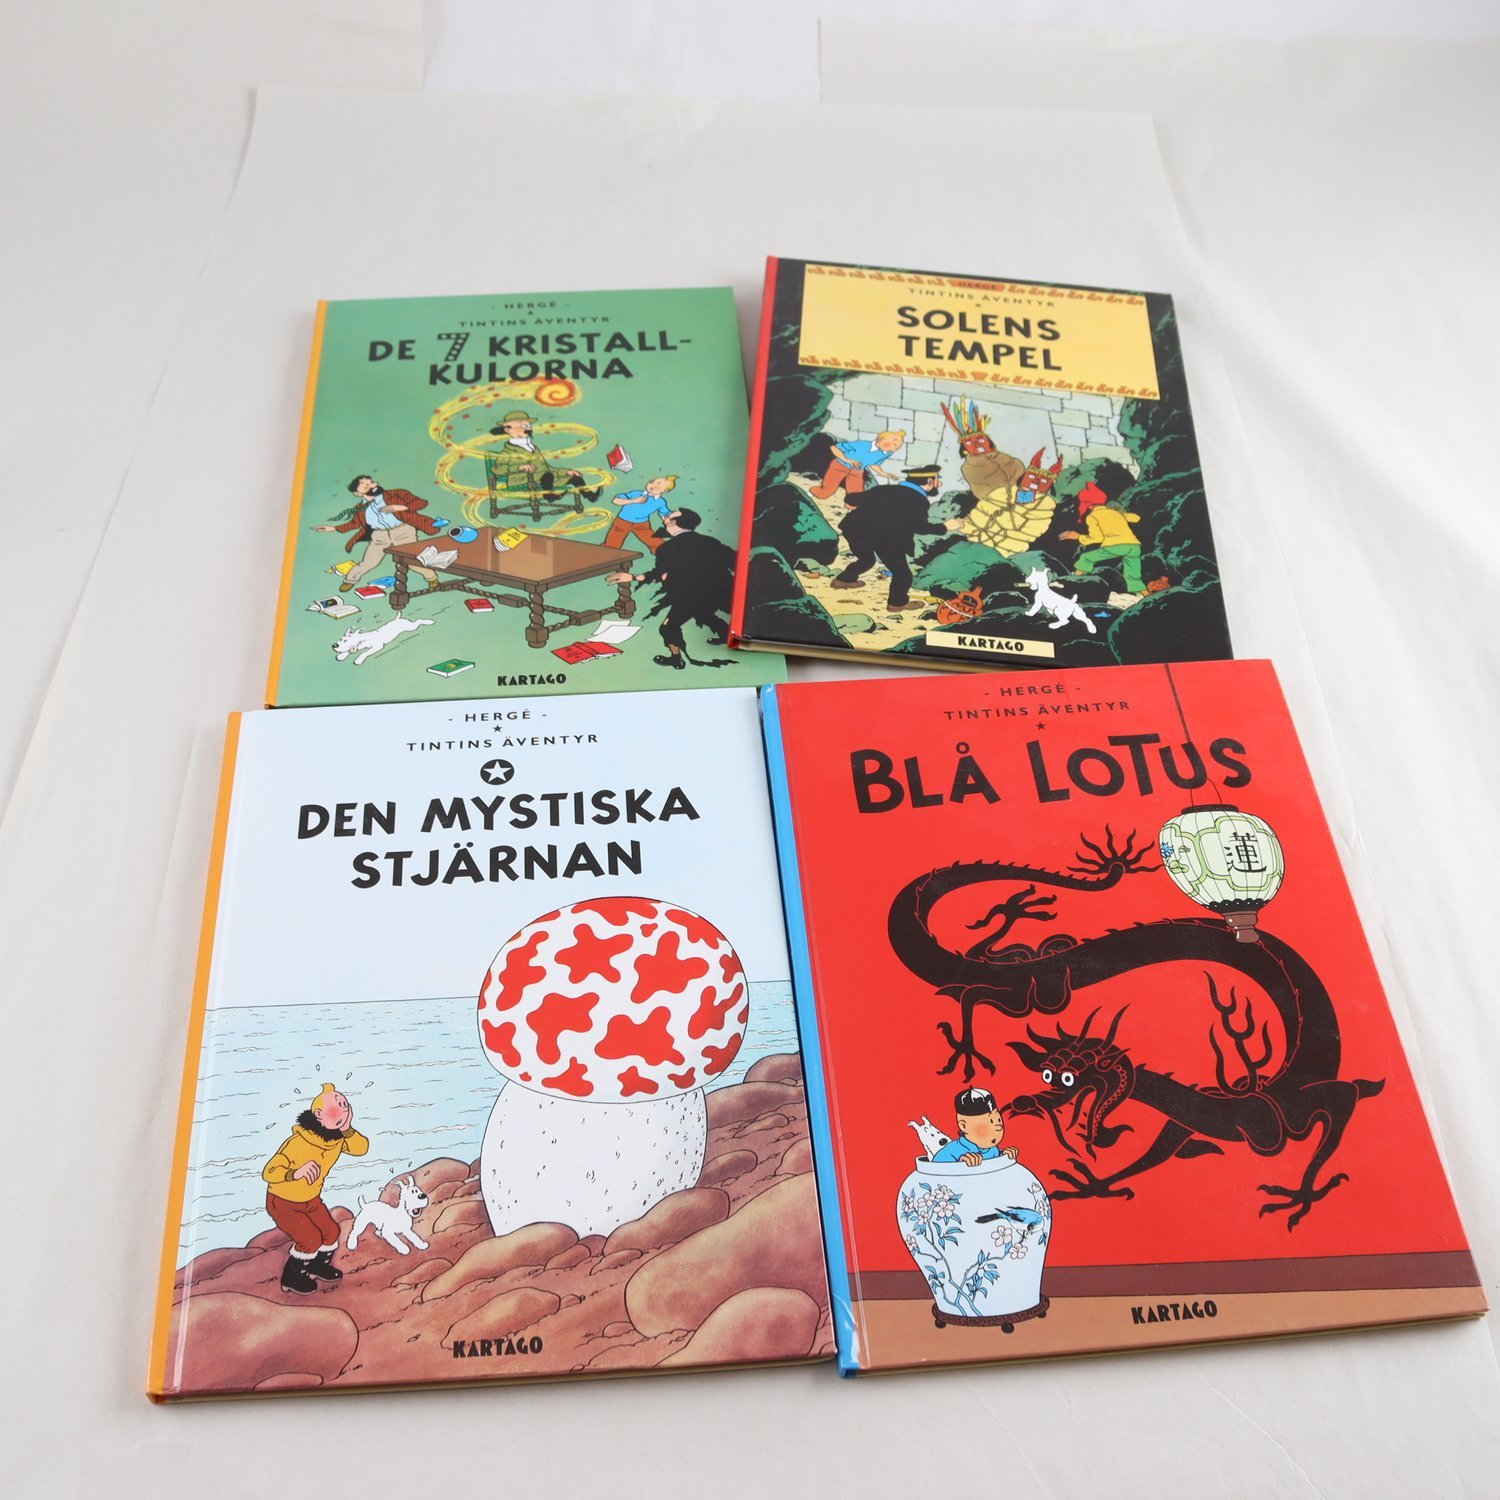 Hergé, Tintins äventyr, 4 inbundna volymer från Kartago